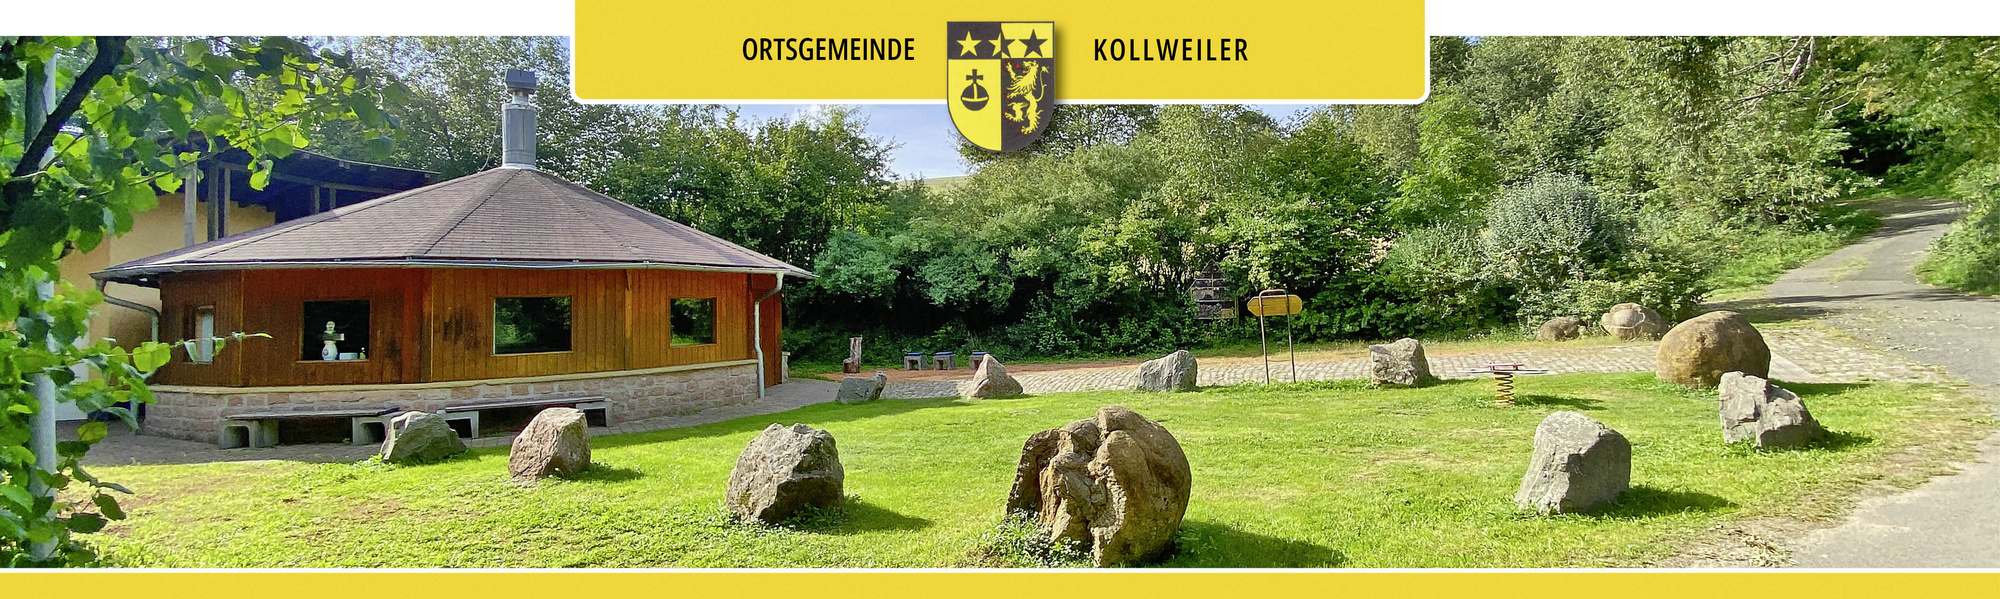 Kollweiler Grillhütte